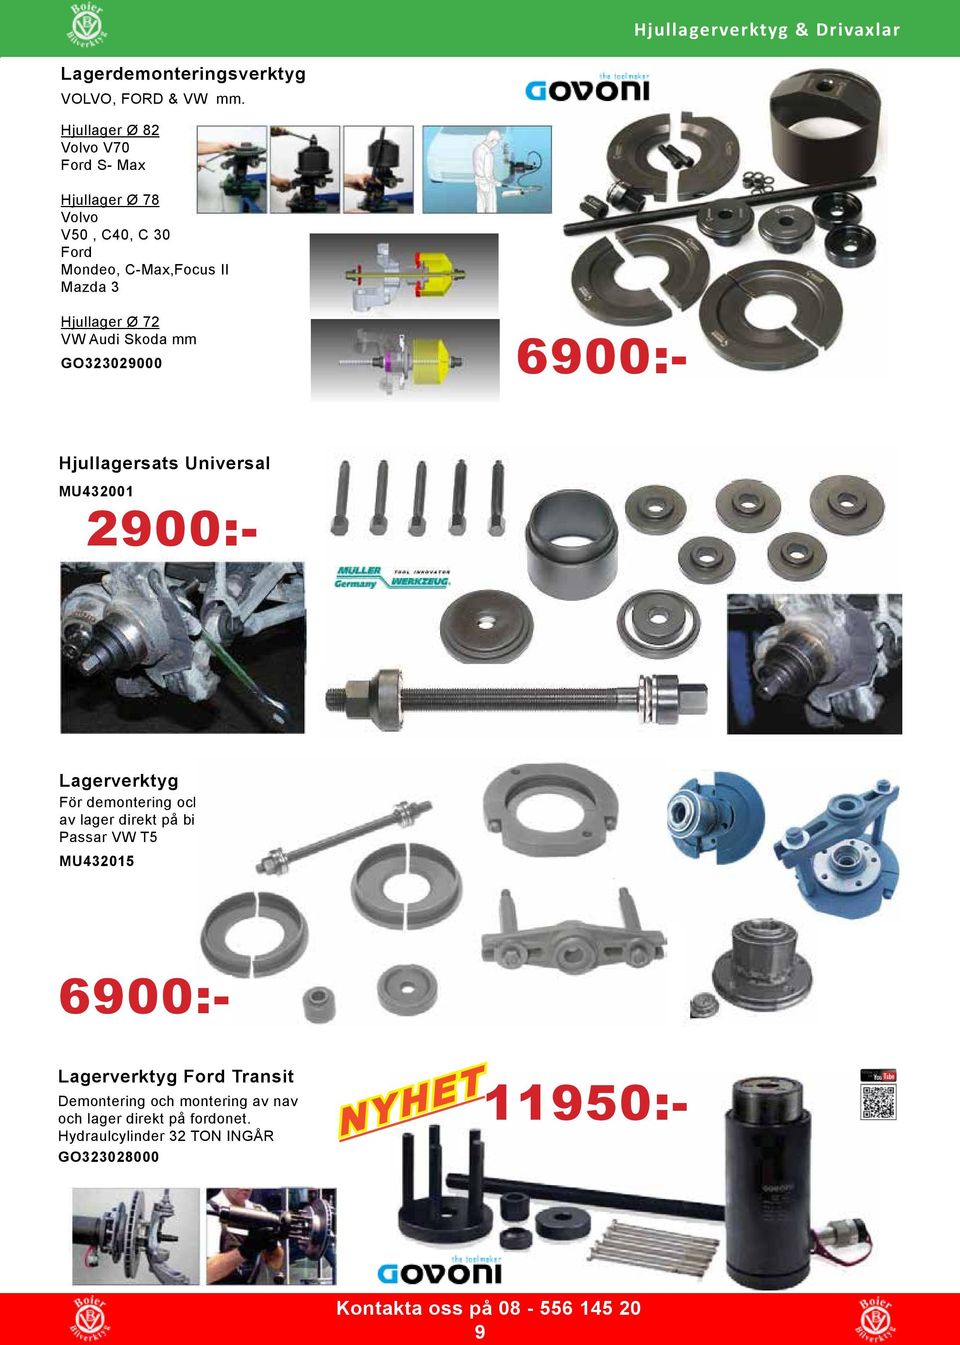 Skoda mm GO323029000 6900:- Hjullagersats Universal MU432001 2900:- Lagerverktyg För demontering och montering av lager direkt på bilen.